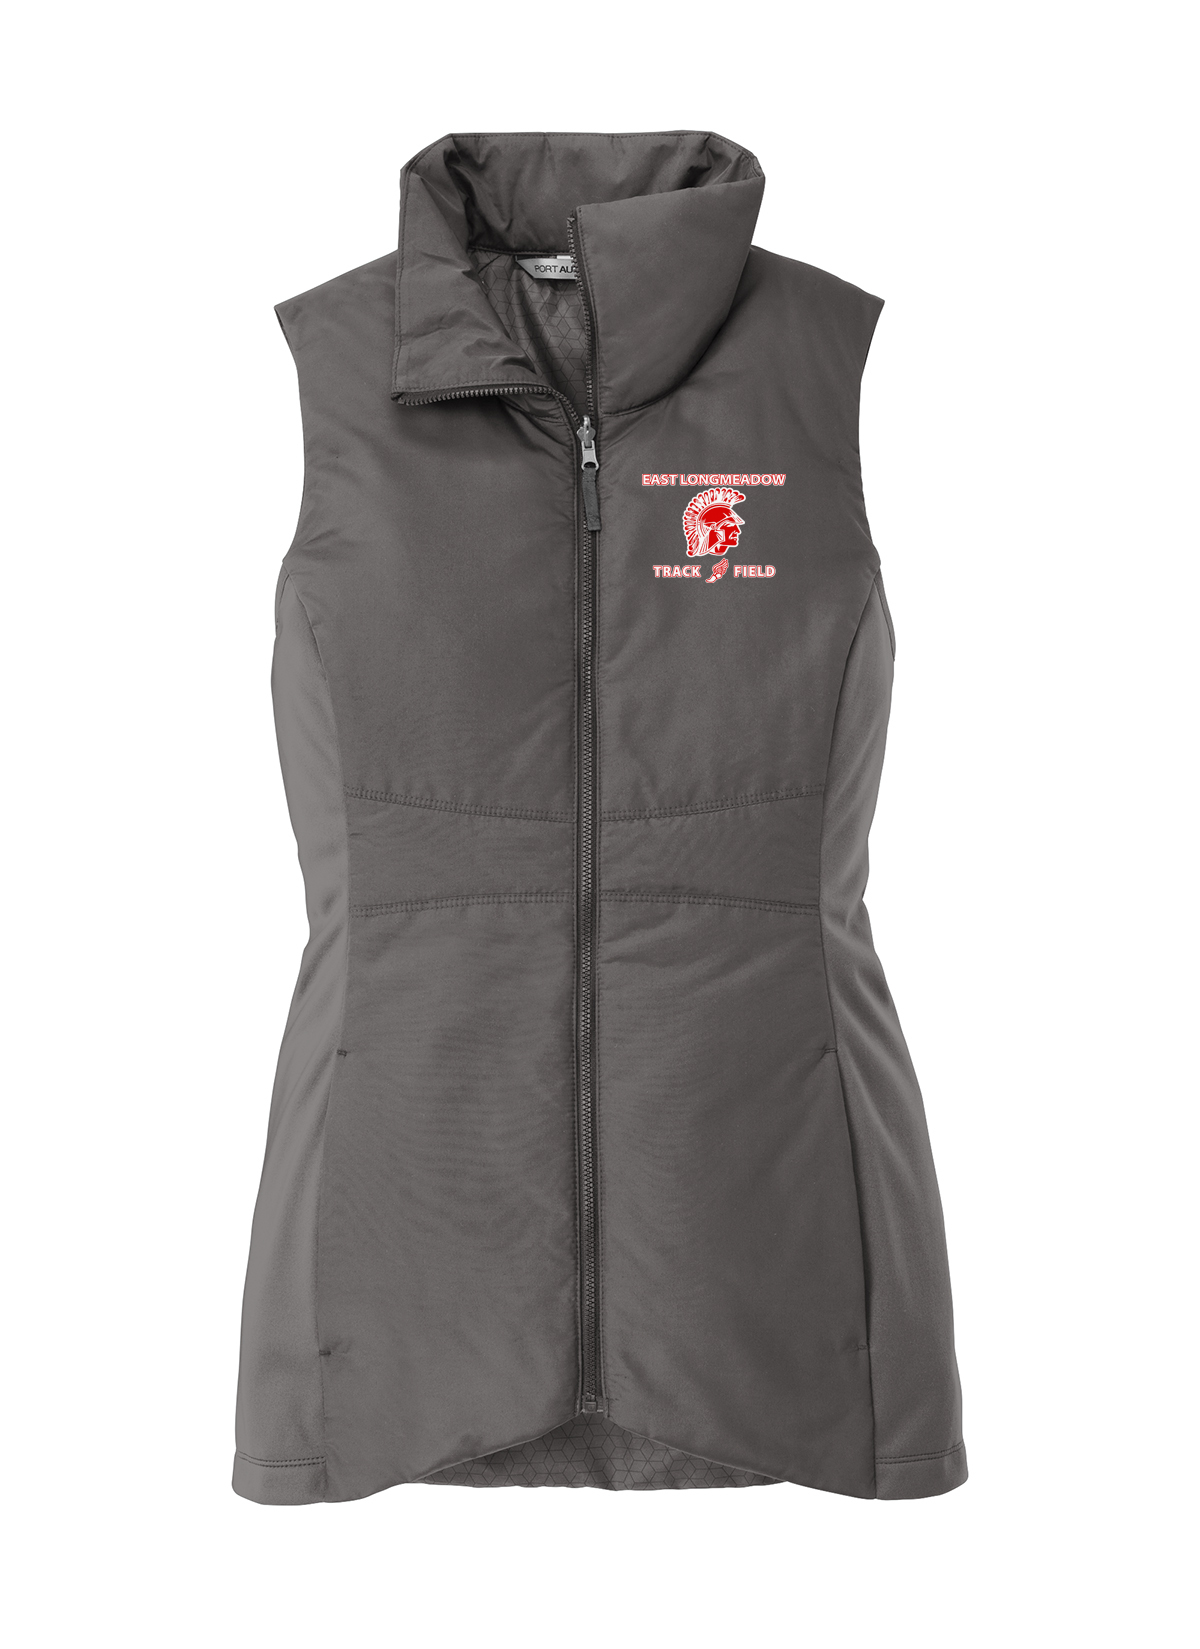 East Longmeadow Track and Field Women's Graphite Vest